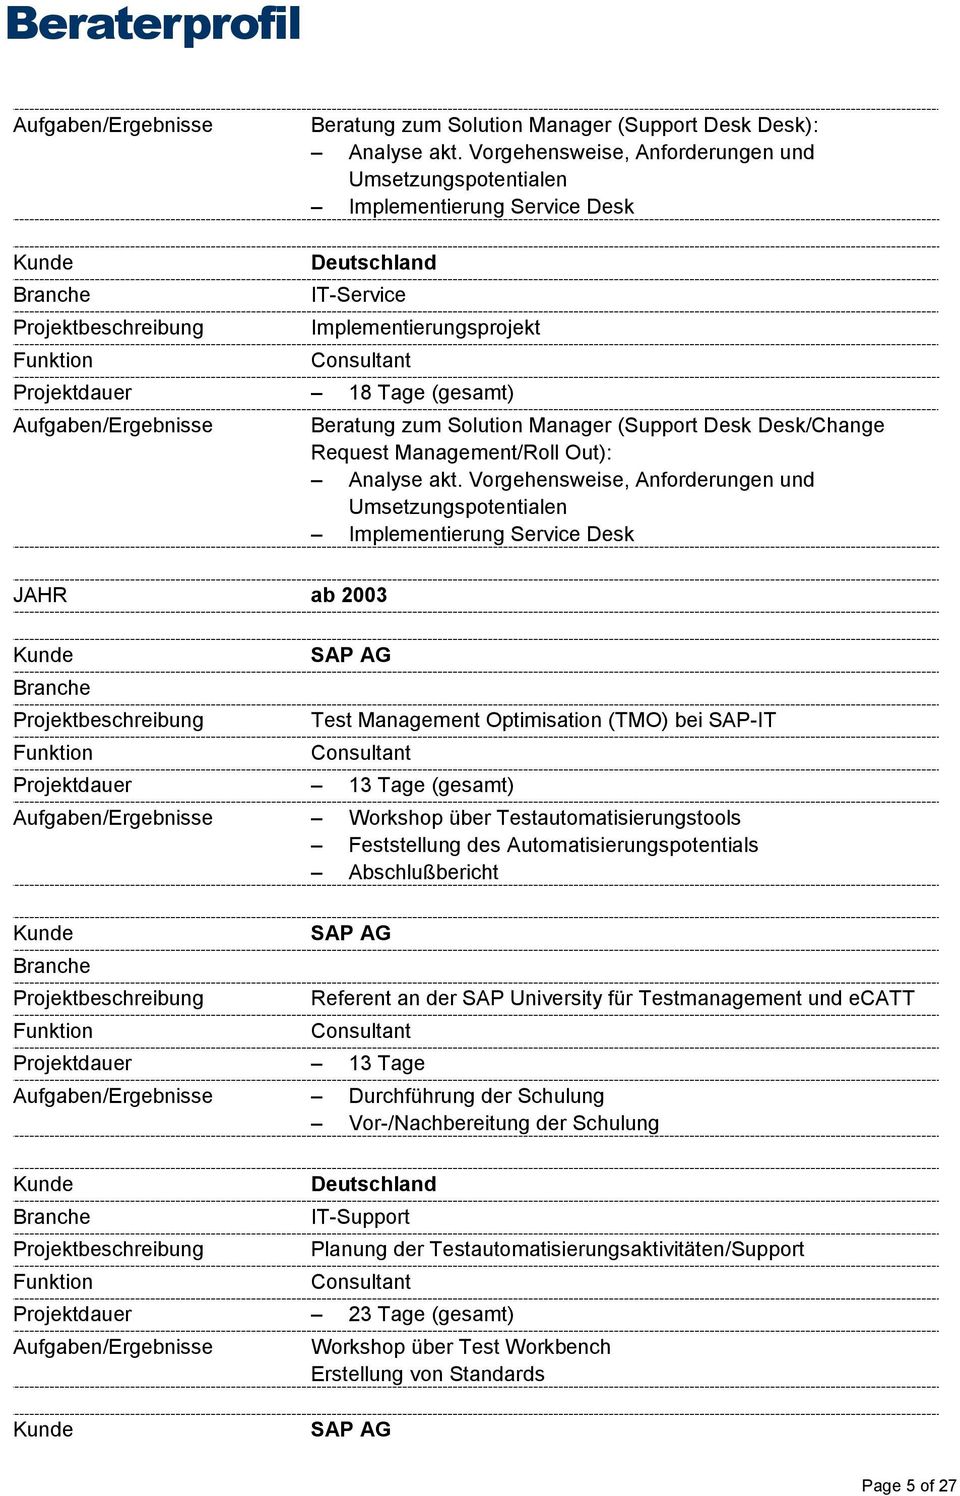 Feststellung des Automatisierungspotentials Abschlußbericht Referent an der SAP University für Testmanagement und ecatt Projektdauer 13 Tage Aufgaben/Ergebnisse Durchführung der Schulung